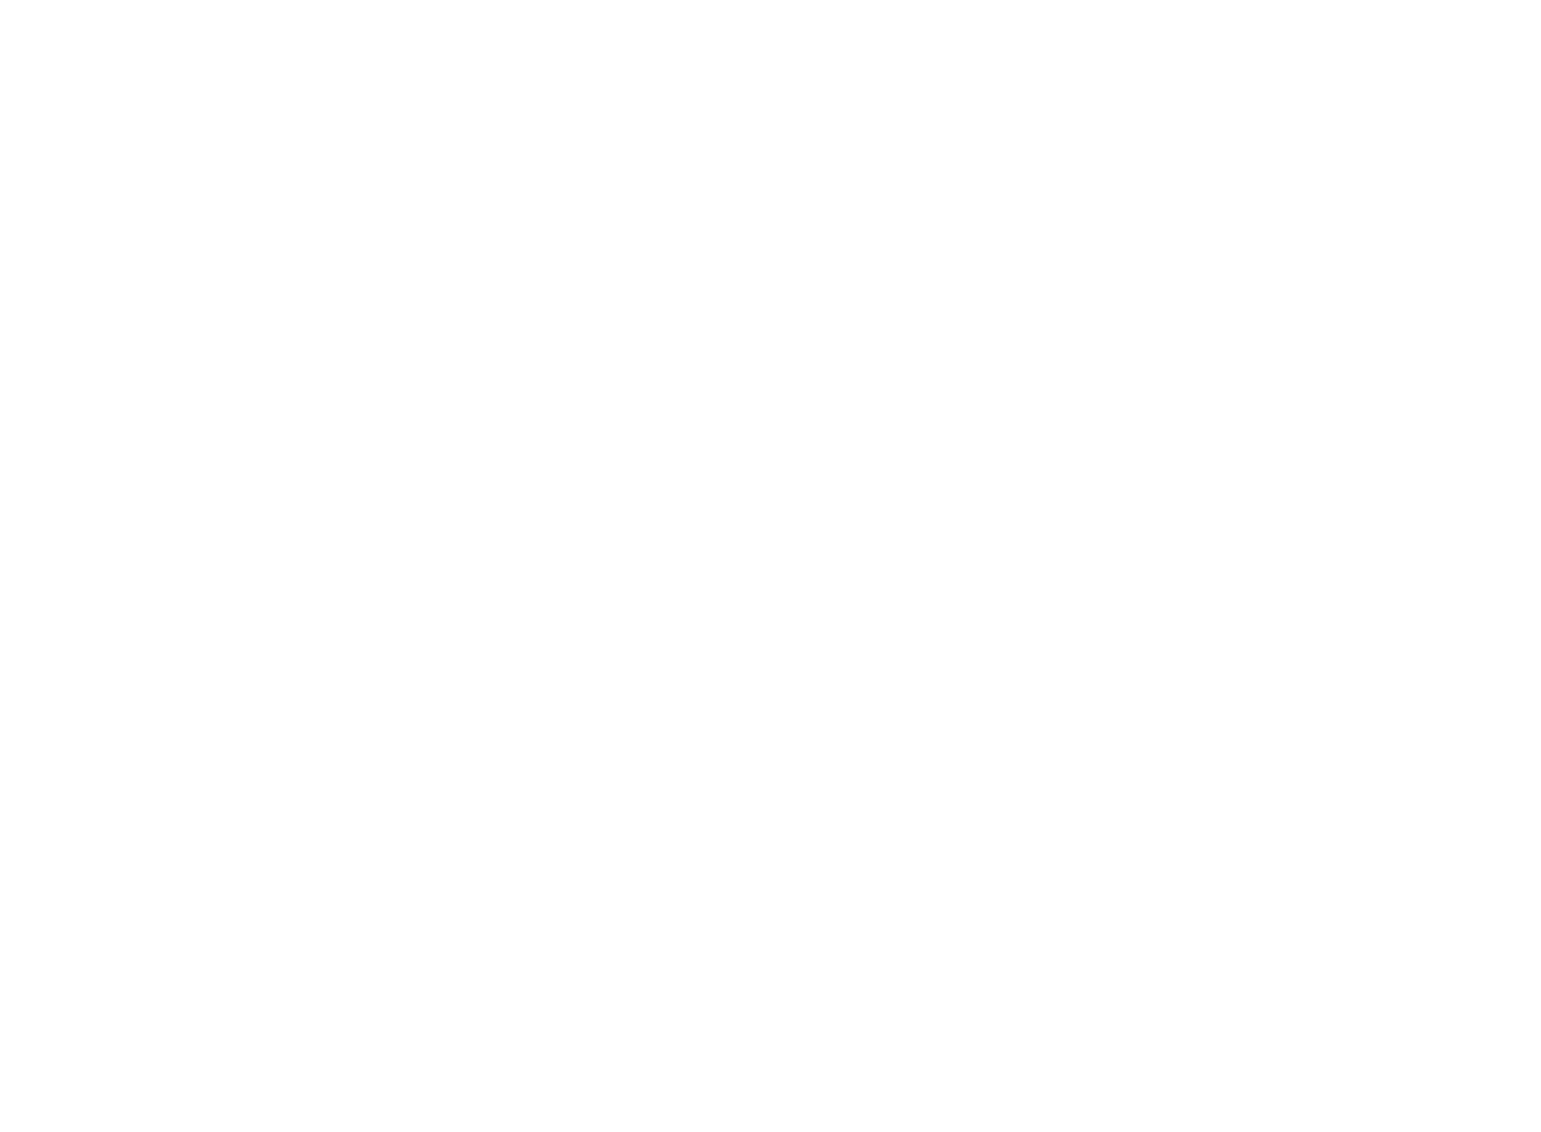 UNO Minda logo for dark backgrounds (transparent PNG)